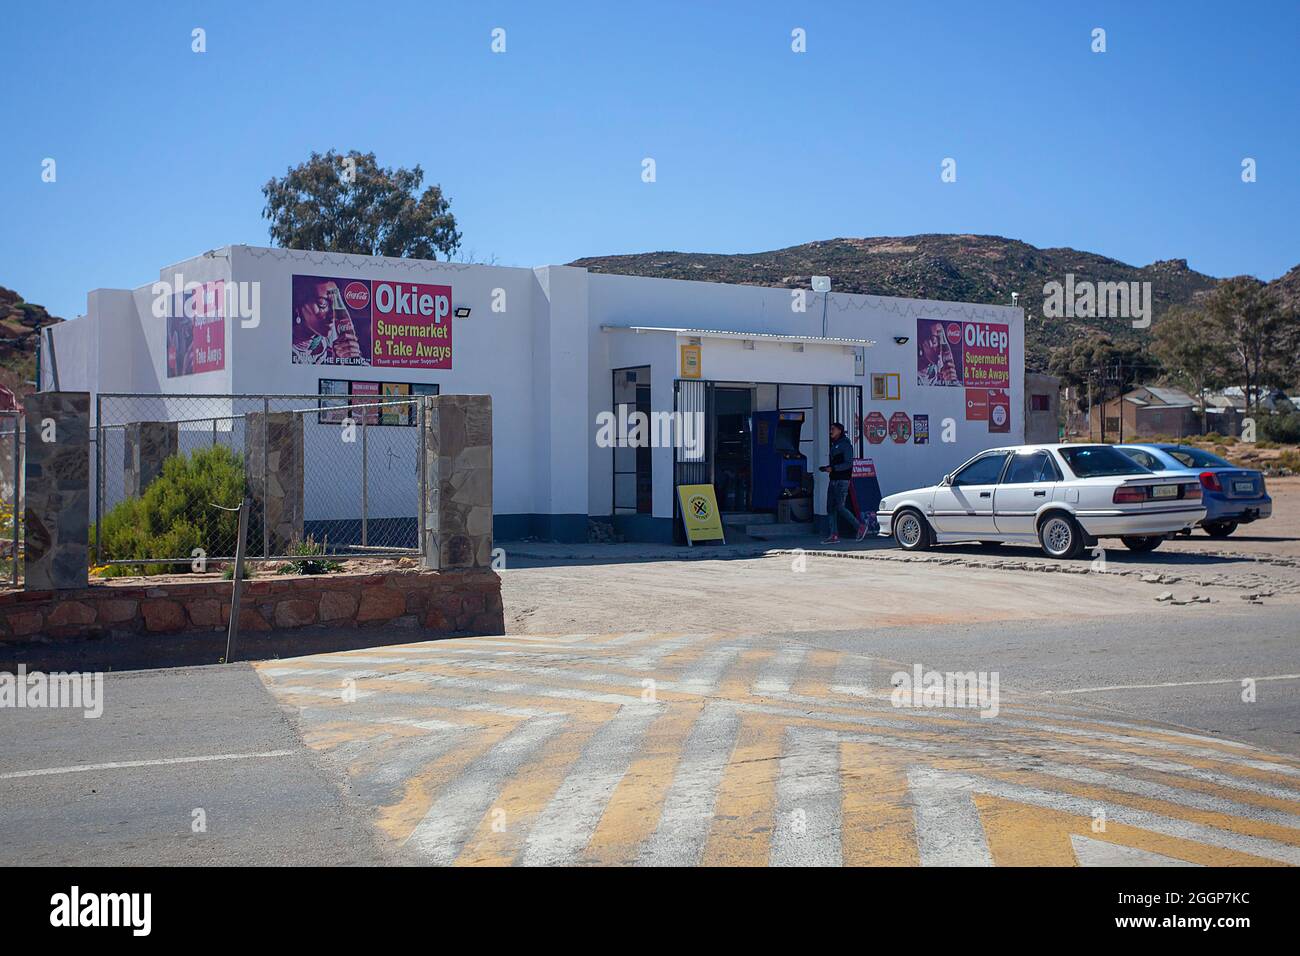 Supermarché Okiep et café à emporter. Norther Cape, Afrique du Sud Banque D'Images